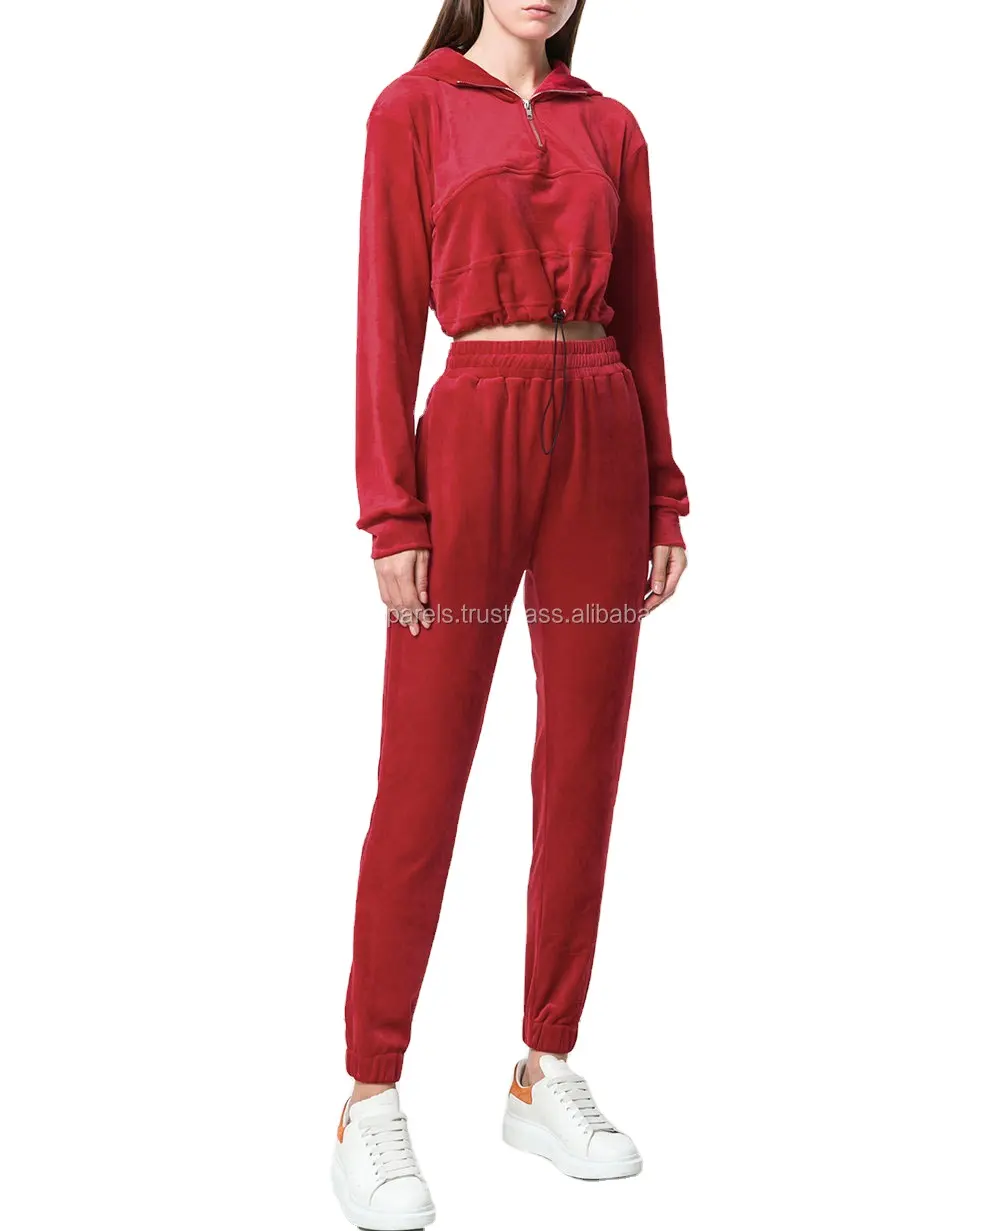 男性と女性のための新しいファッションポリエステルジョギングトラックスーツ、ベロア & コットンフリーストラックスーツの赤い色